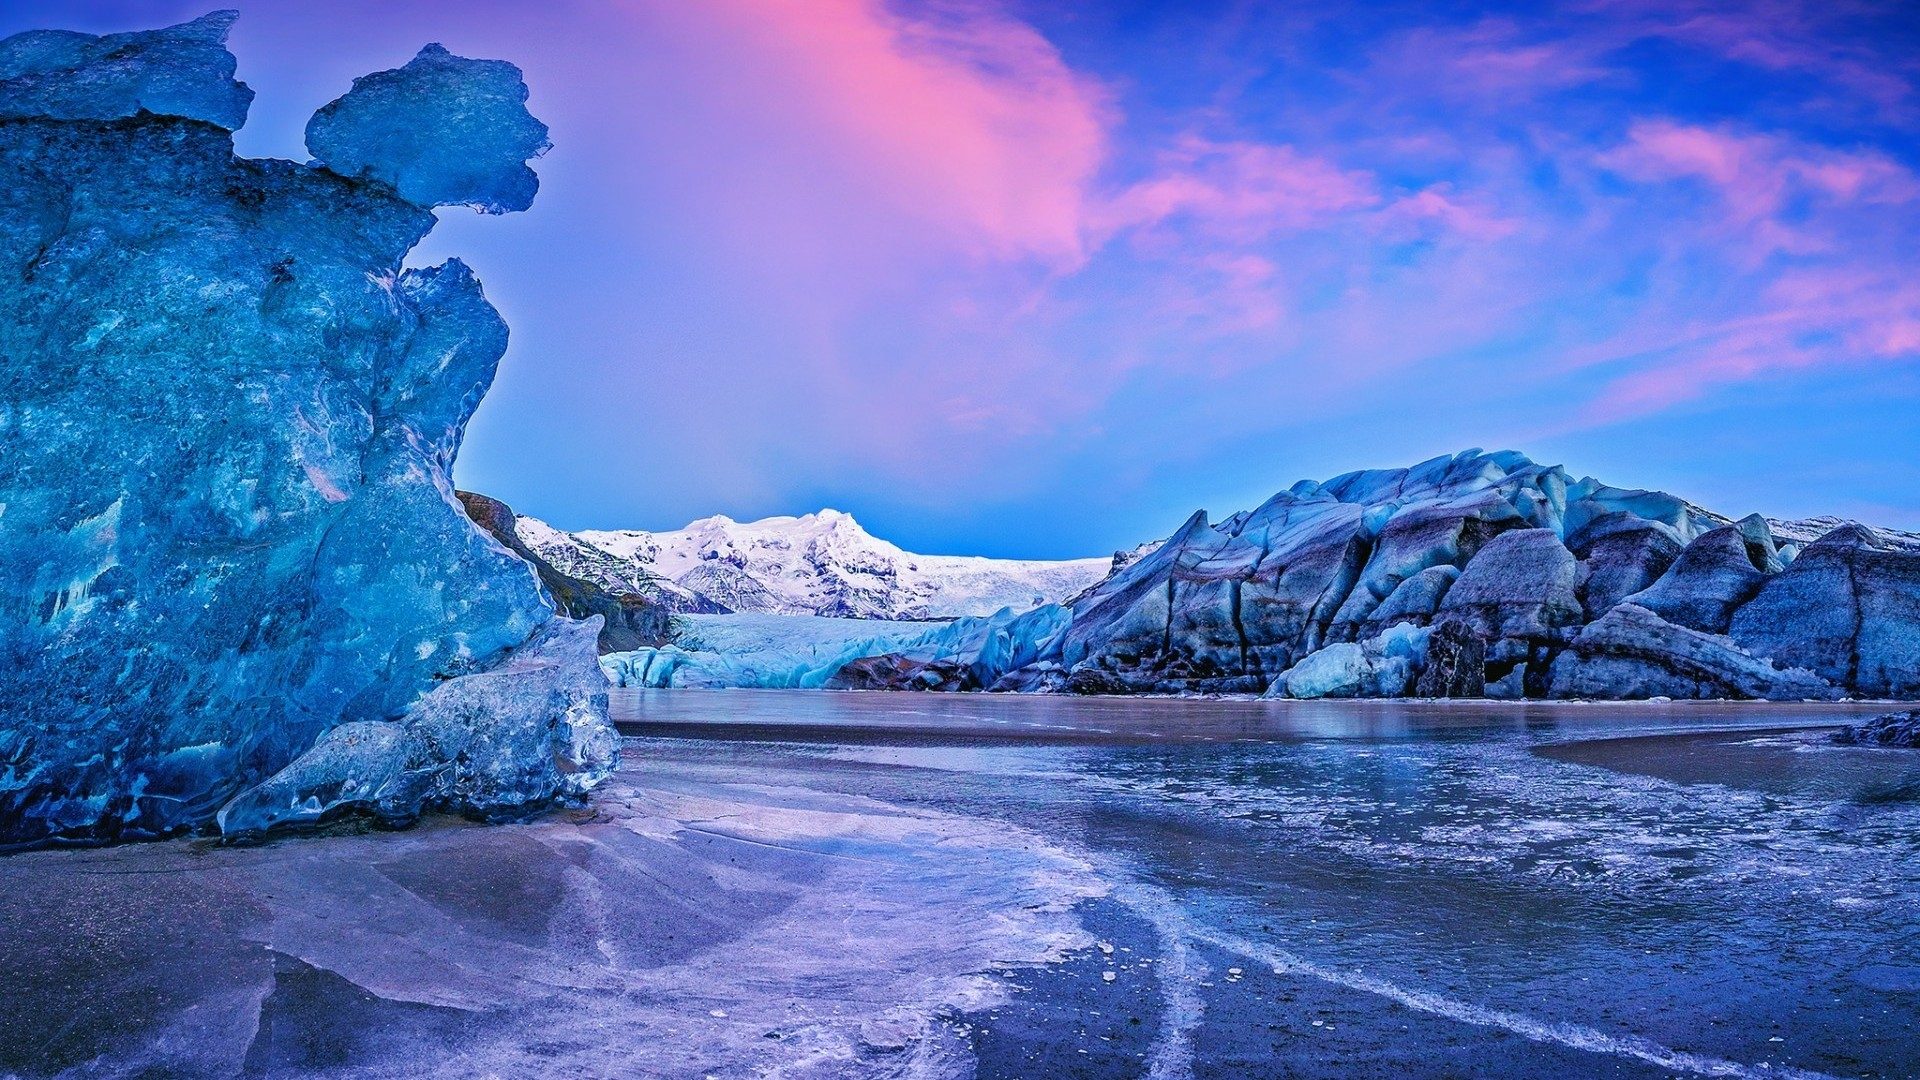 来冰岛看北极光 | 最佳季节、最佳时间和最佳地点 | Guide to Iceland